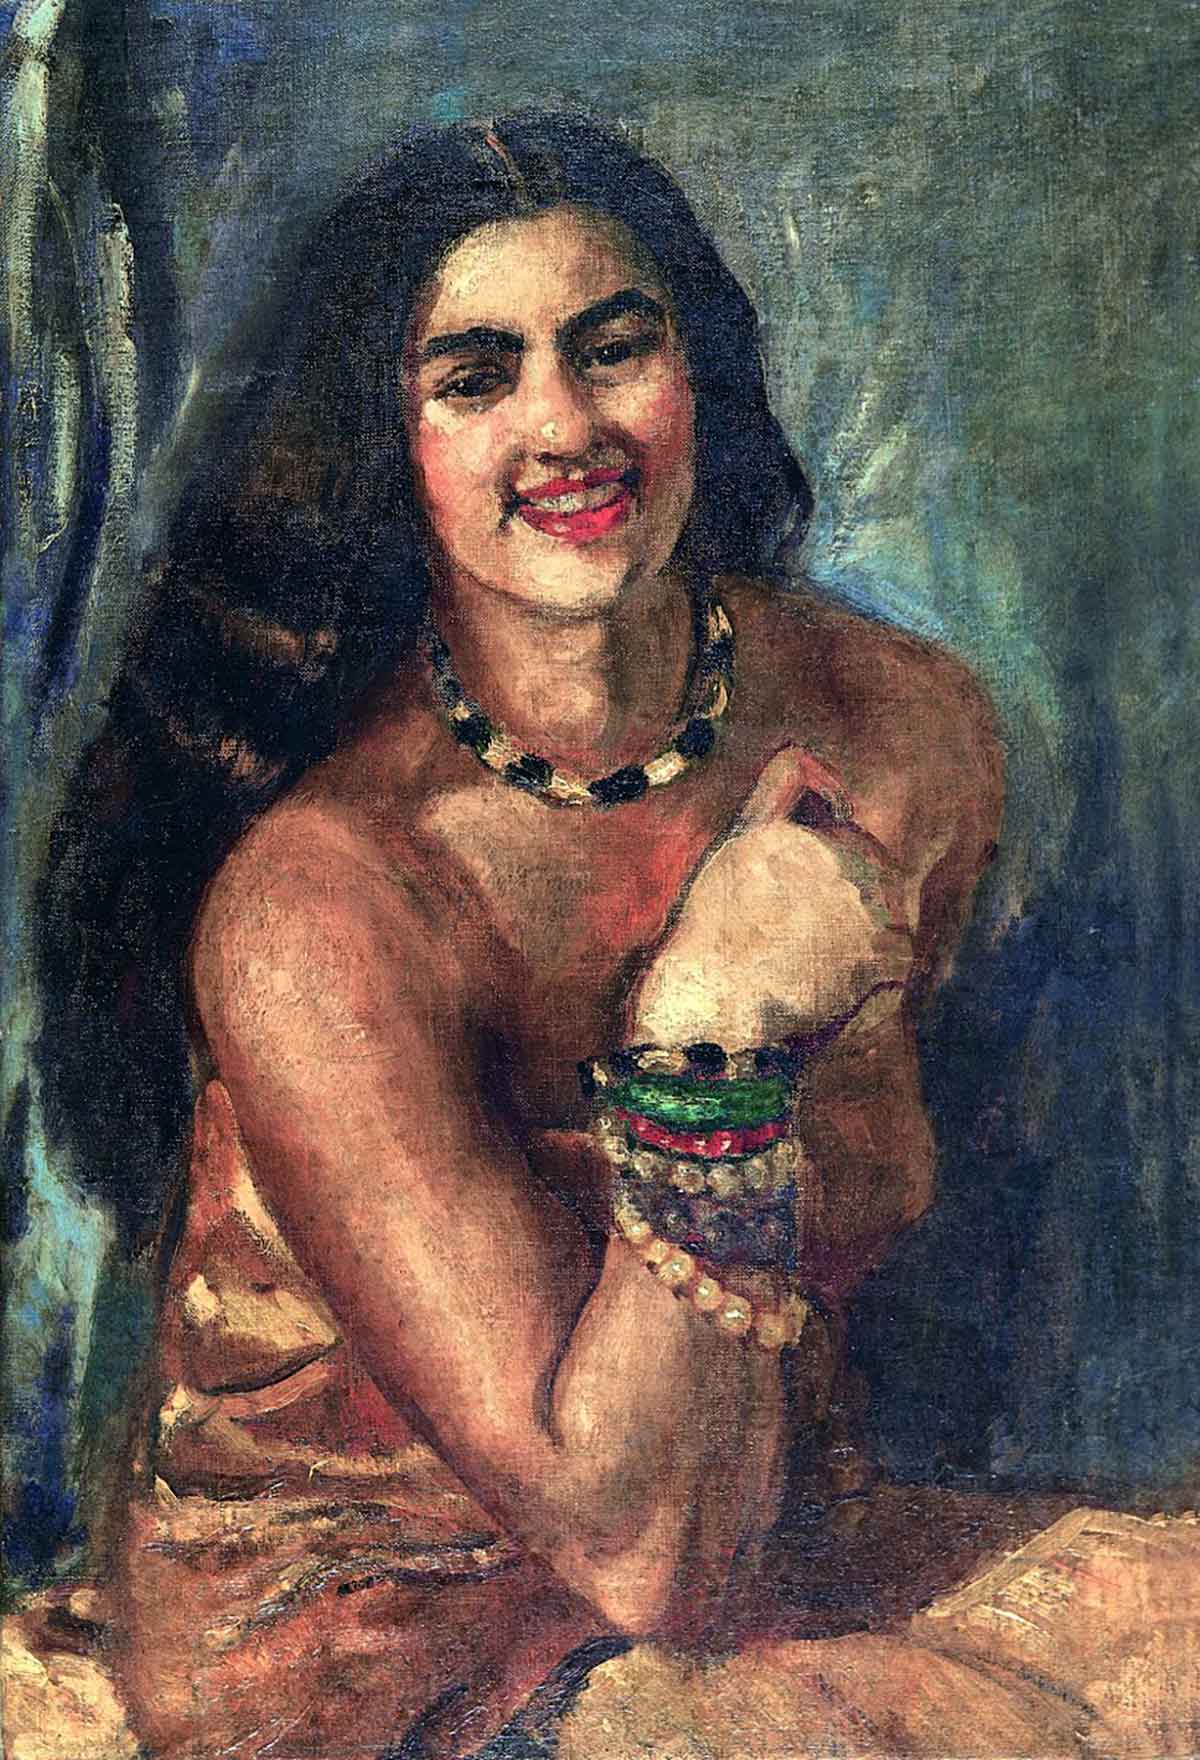 Rare Amrita Sher-Gil portrait sells for record $2.92 million